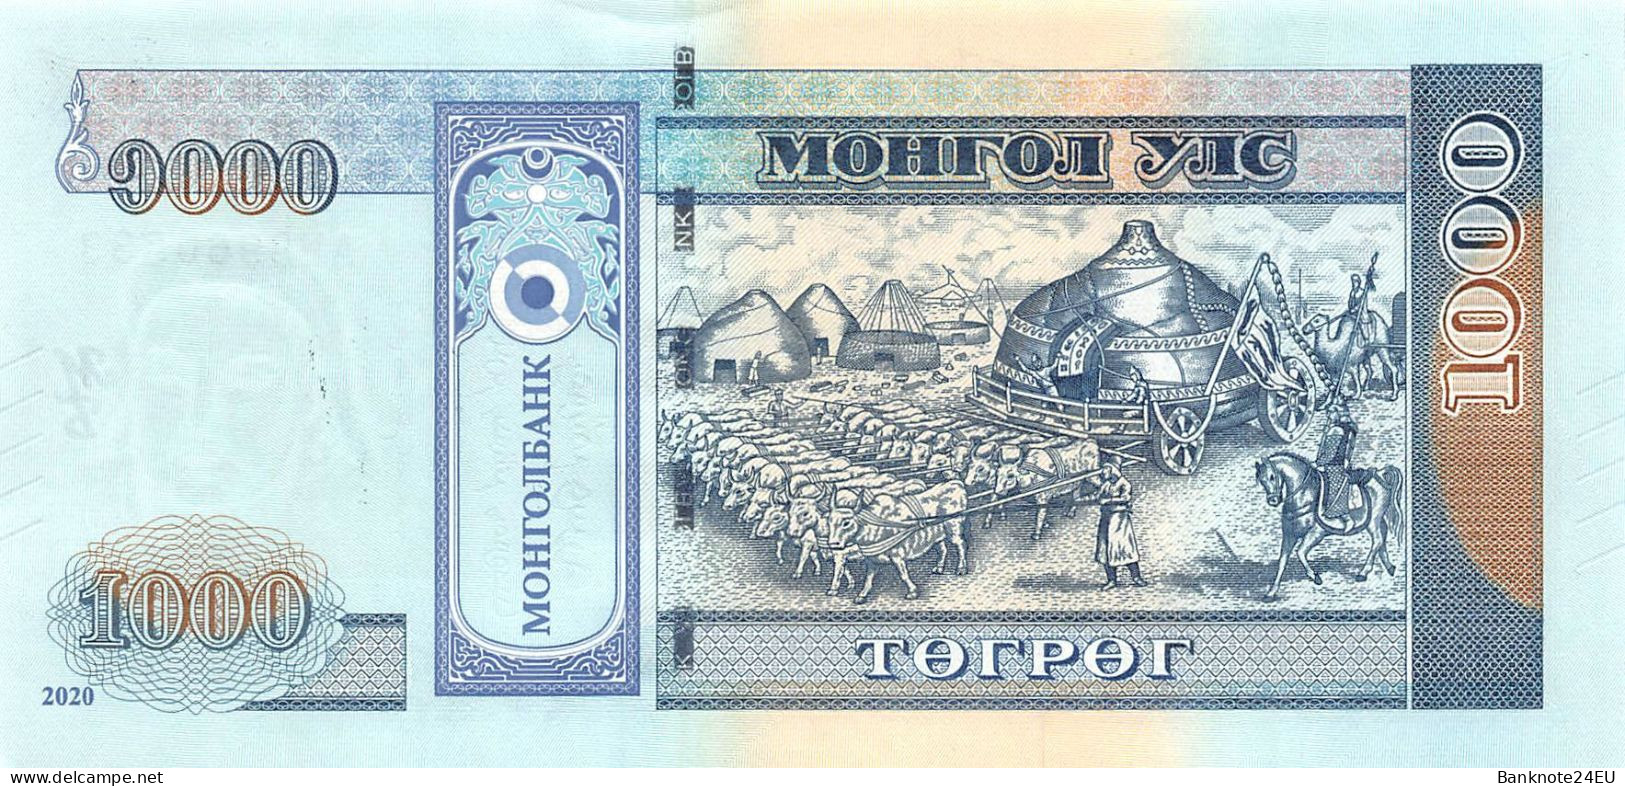 Mongolia 1000 Togrog 2020 Unc Pn 75a - Mongolei